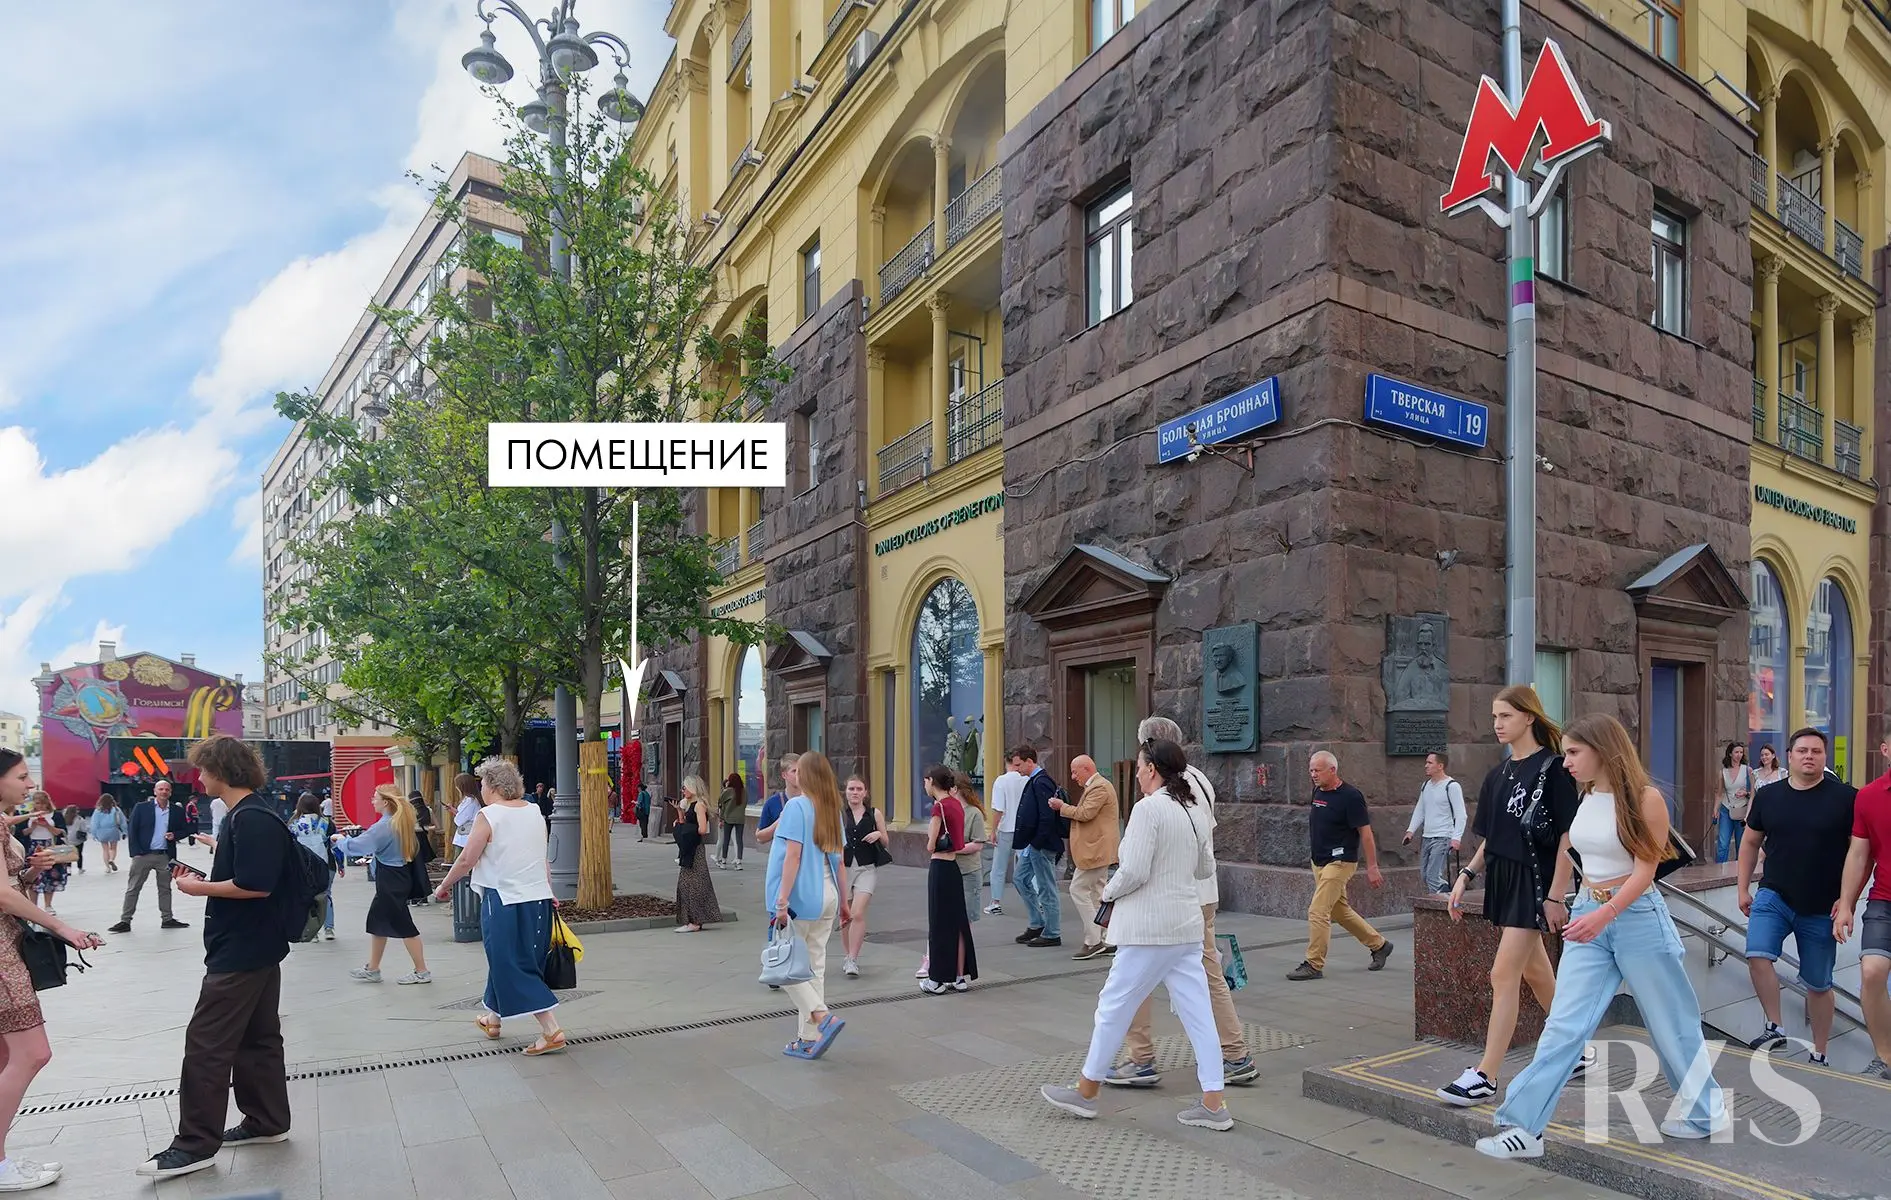 Продажа готового арендного бизнеса площадью 58.4 м2 в Москве: Тверская, 19 R4S | Realty4Sale